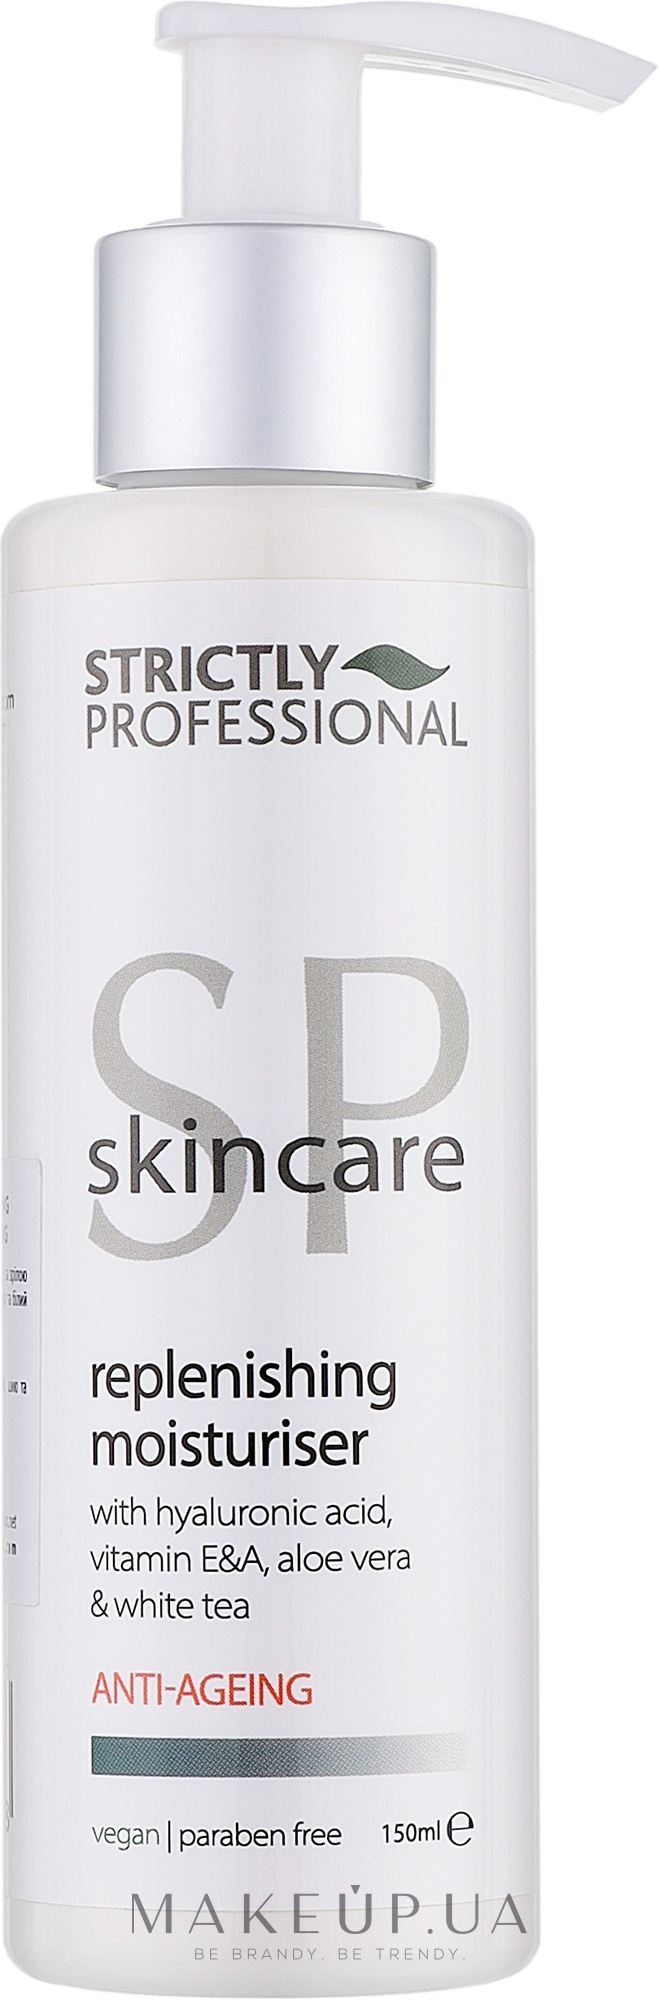 Емульсія зволожувальна для догляду за зрілою шкірою обличчя - Strictly Professional SP Skincare Anti-ageing Replenishing Moisturiser — фото 150ml